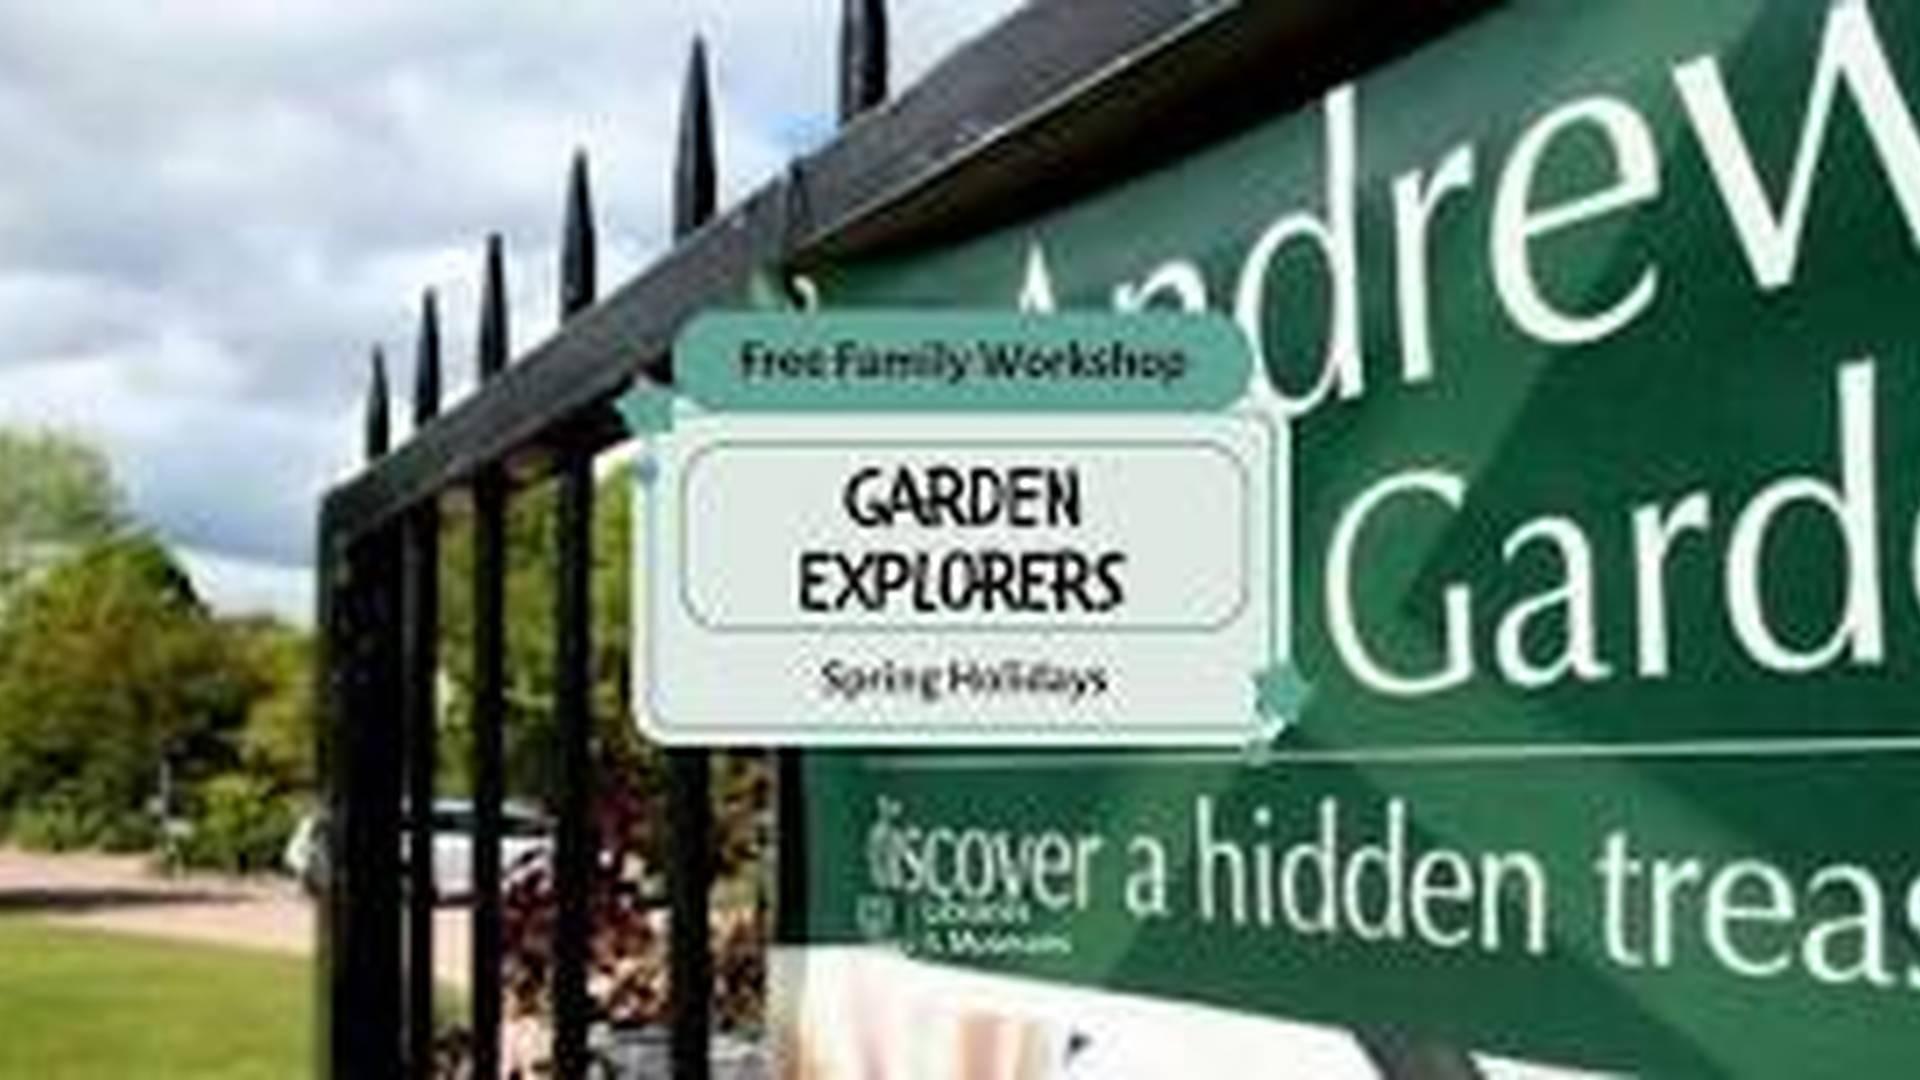 Family Workshop: Garden Explorers (Drop-in) photo